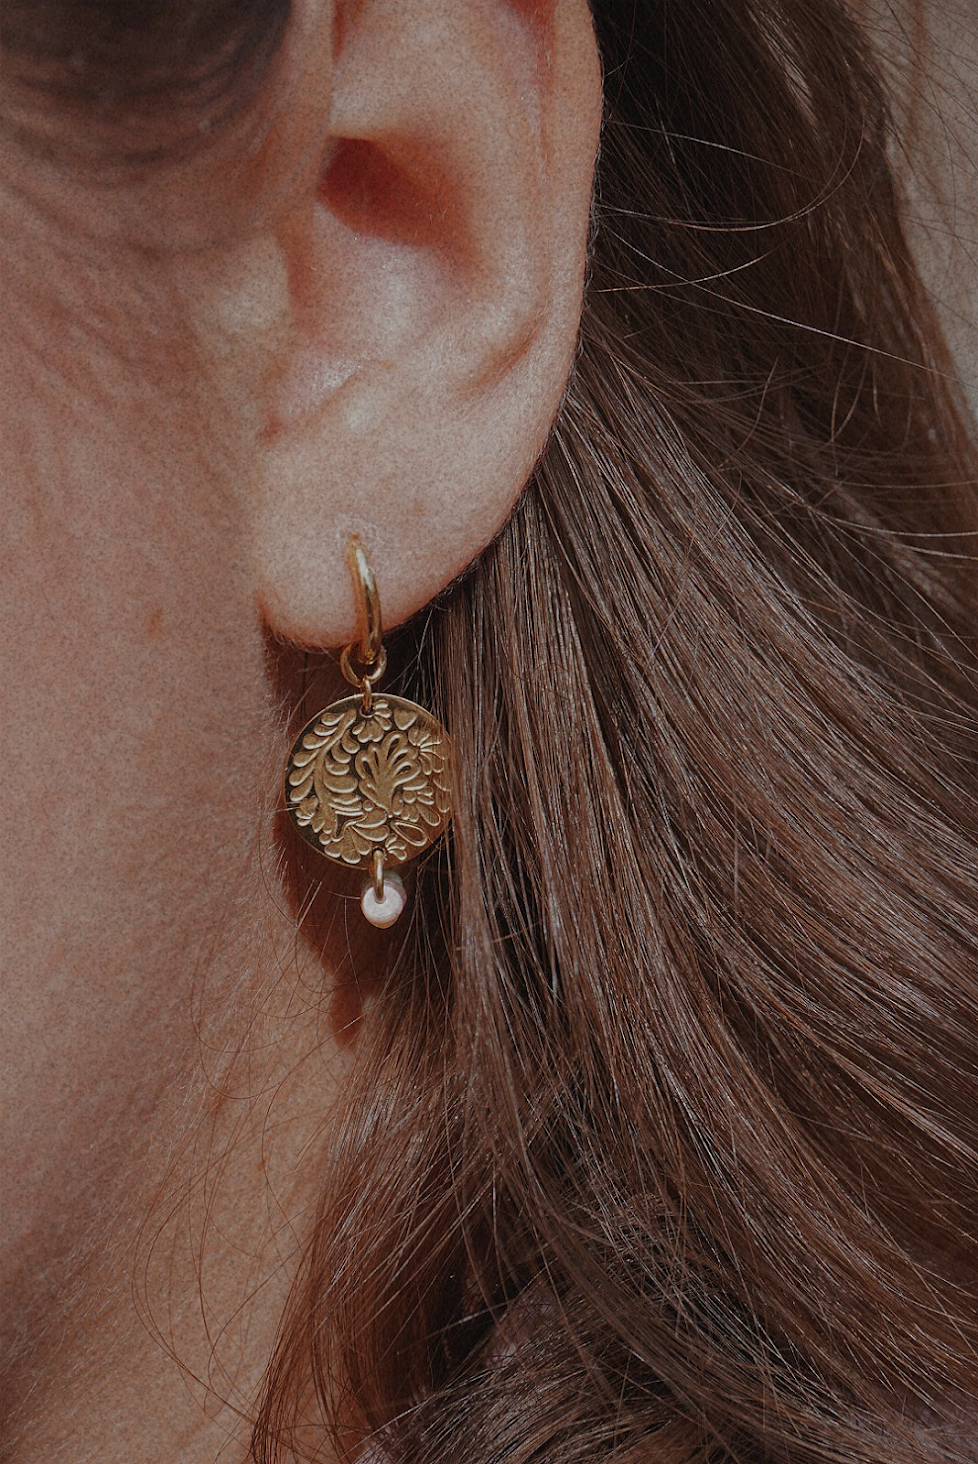 Boucles d'oreilles dorées avec une médaille motifs fleuris et perles multicolores.